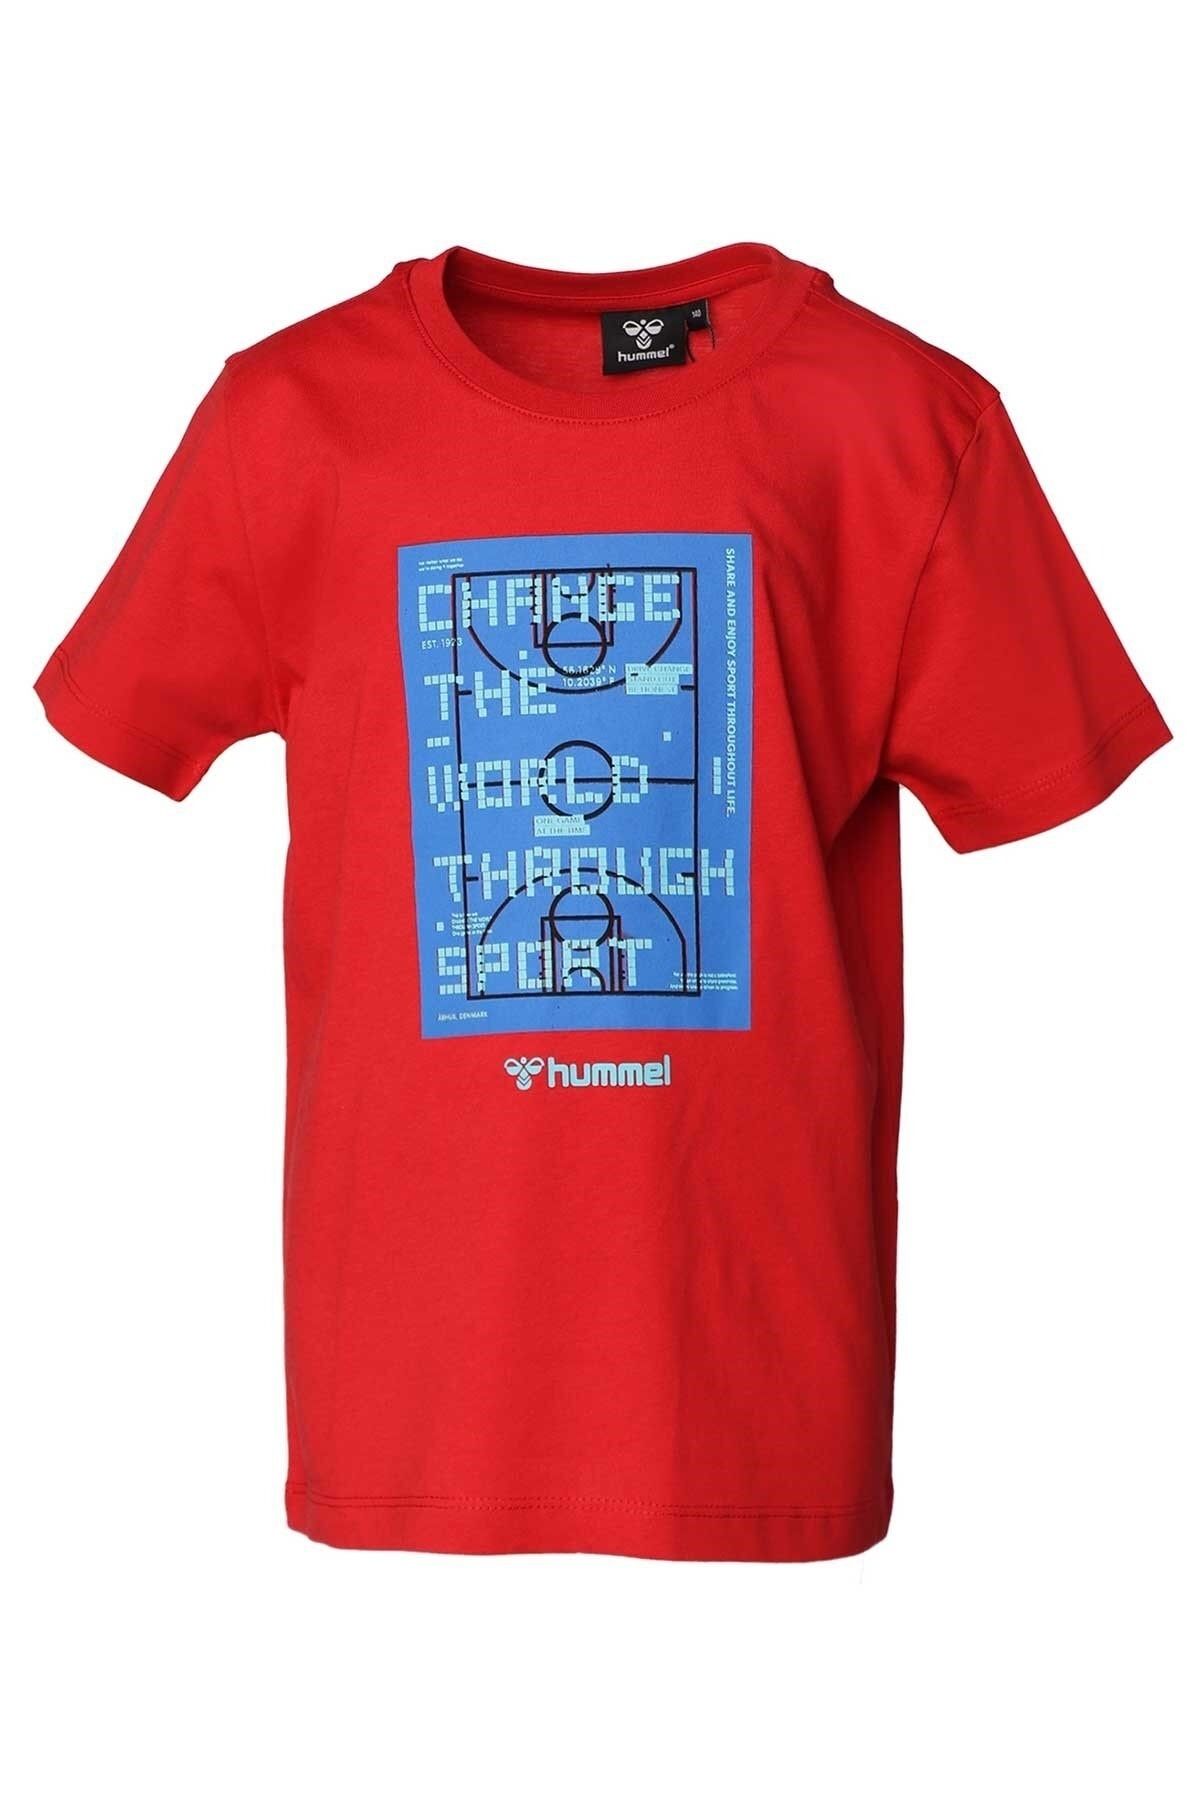 hummel Erkek Çocuk Trinity Kırmızı T-shirt 911683-2220